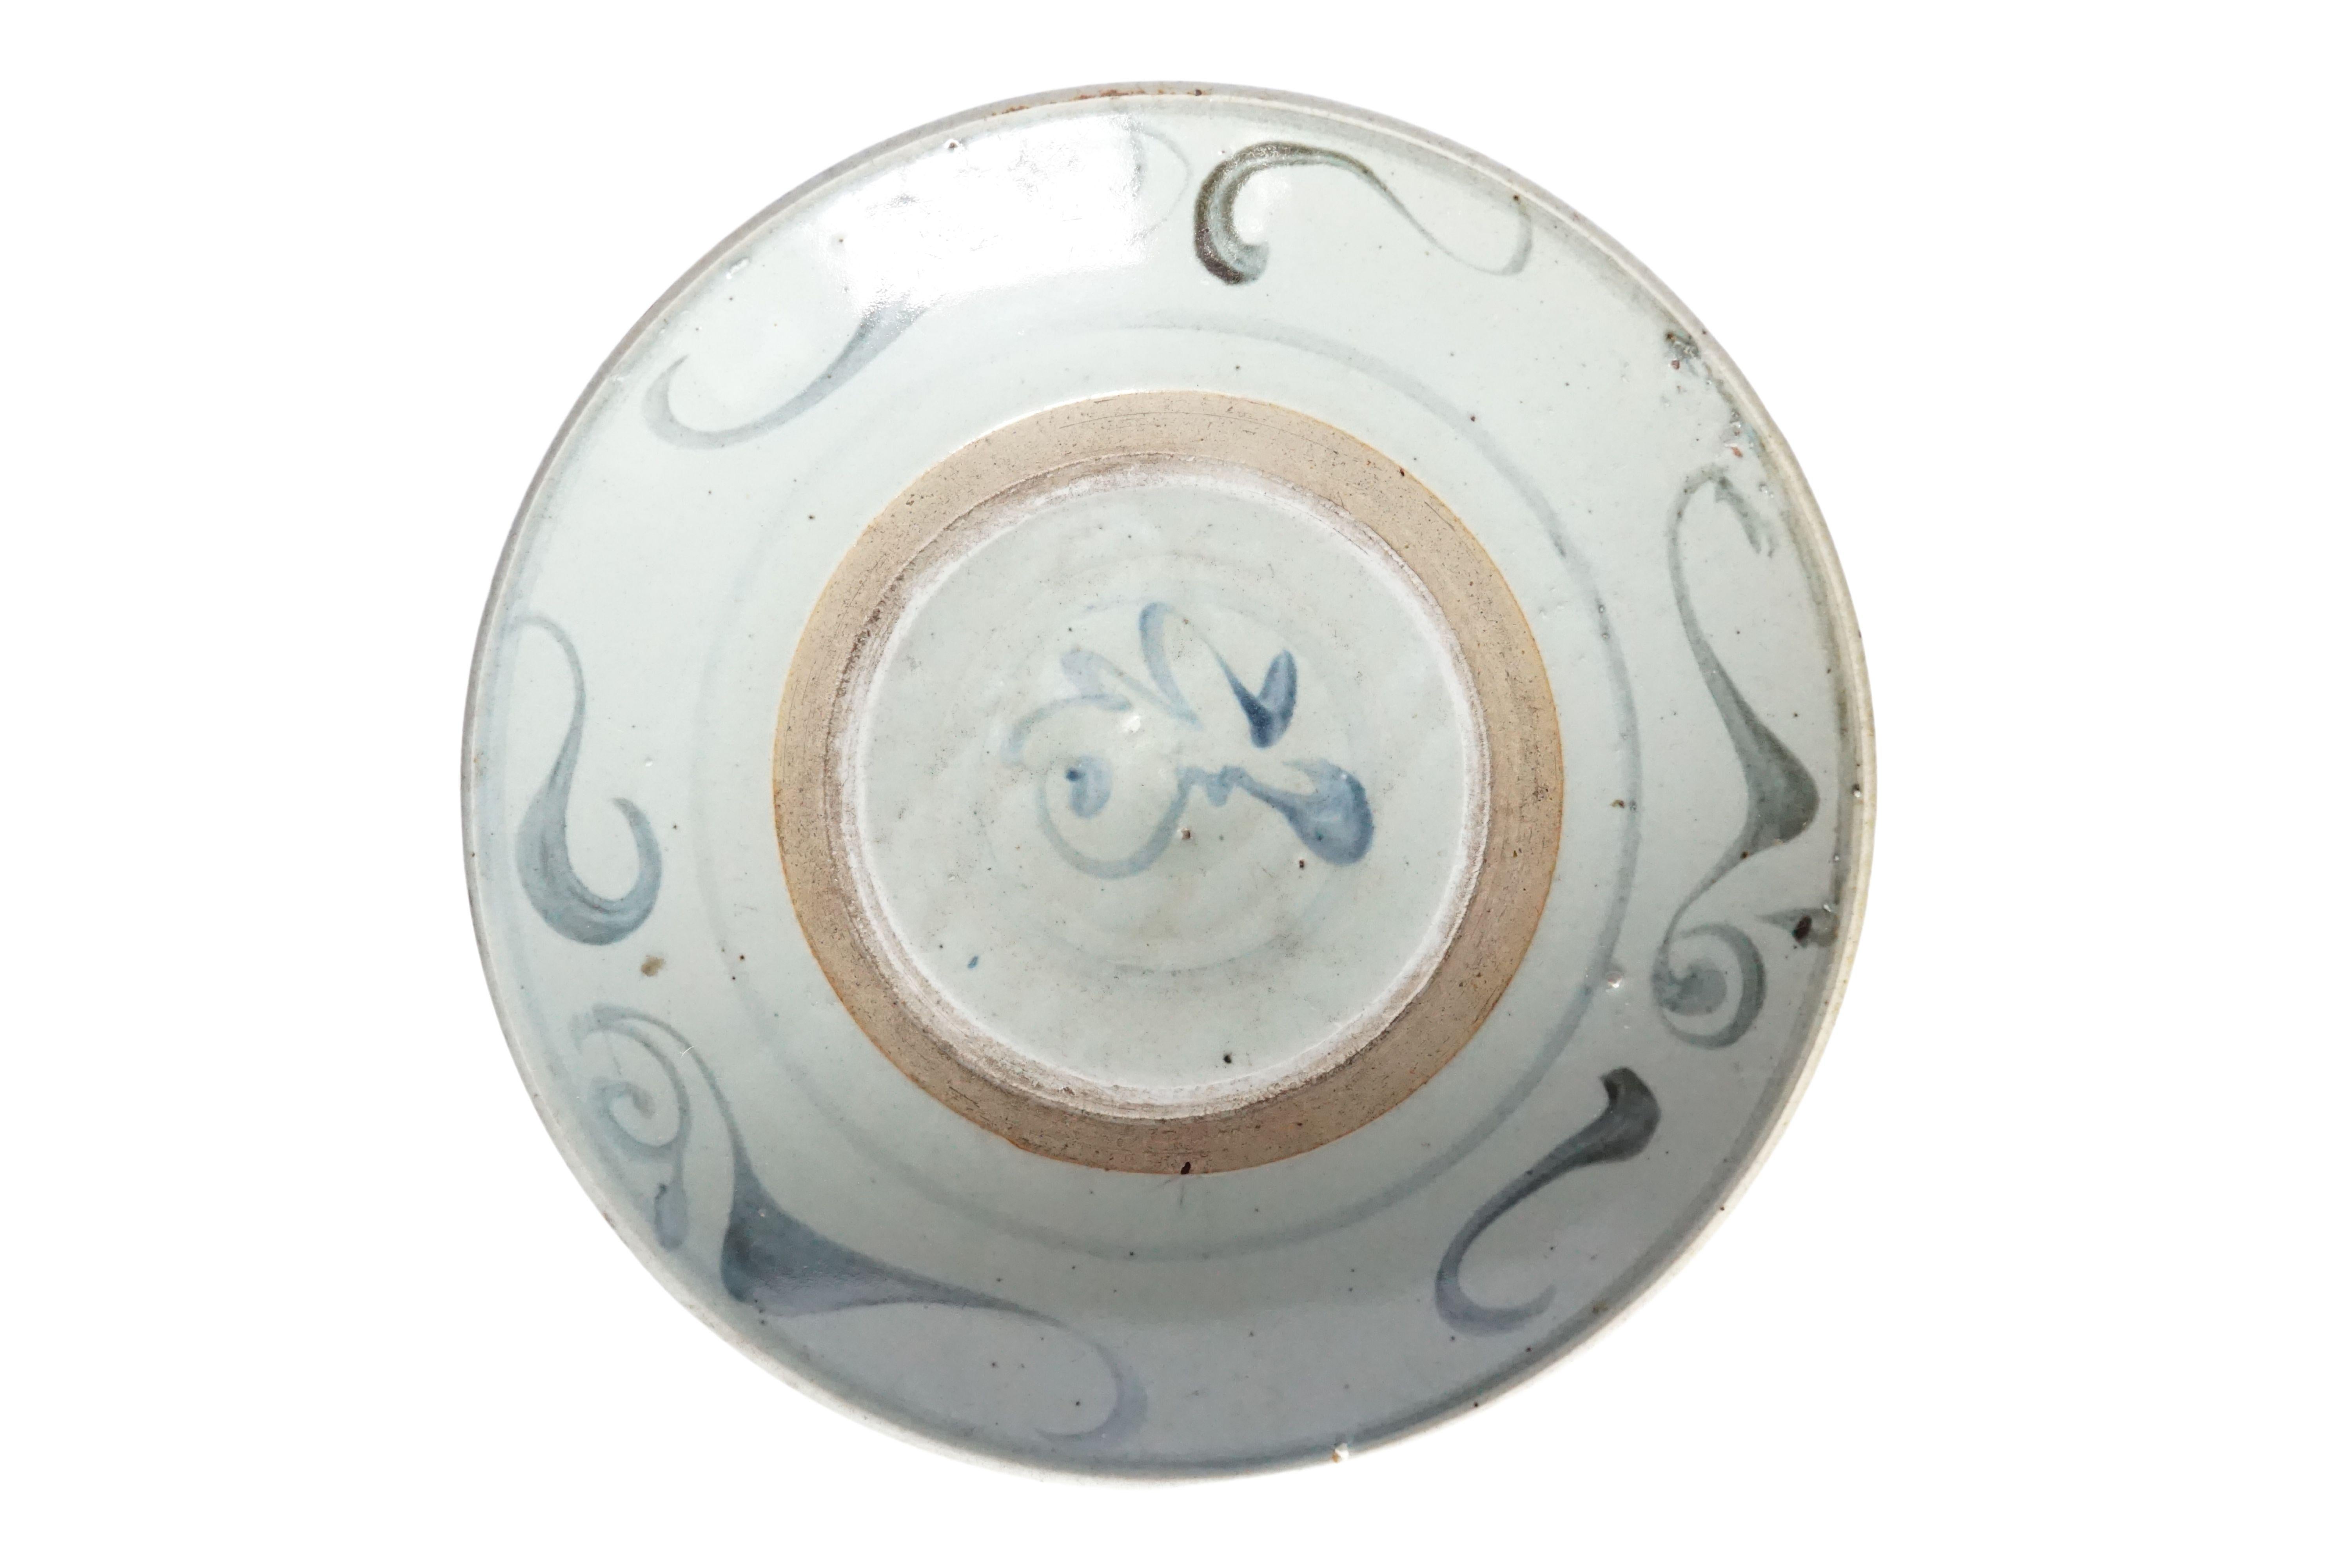 Cette assiette en céramique chinoise est dominée par une glaçure bleu-gris et présente de magnifiques traits de bleu peints à la main. Utilisée autrefois comme assiette de tous les jours, elle est aujourd'hui un bel exemple de céramique chinoise et